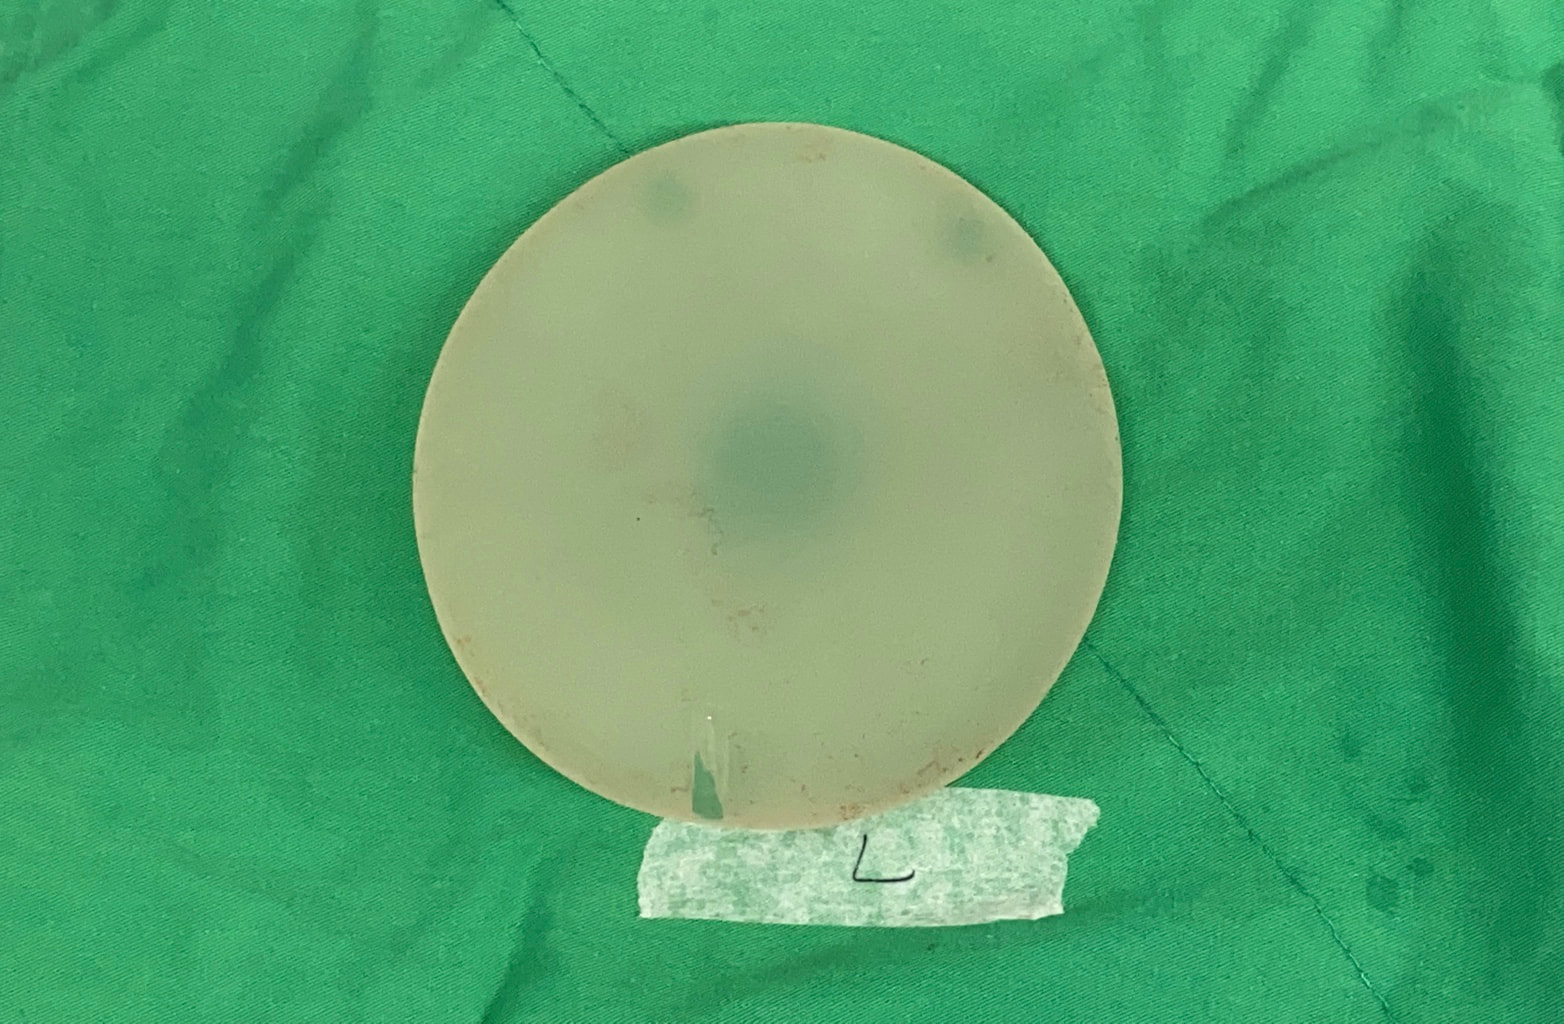 圖片從左側取出的水滴型果凍硅膠